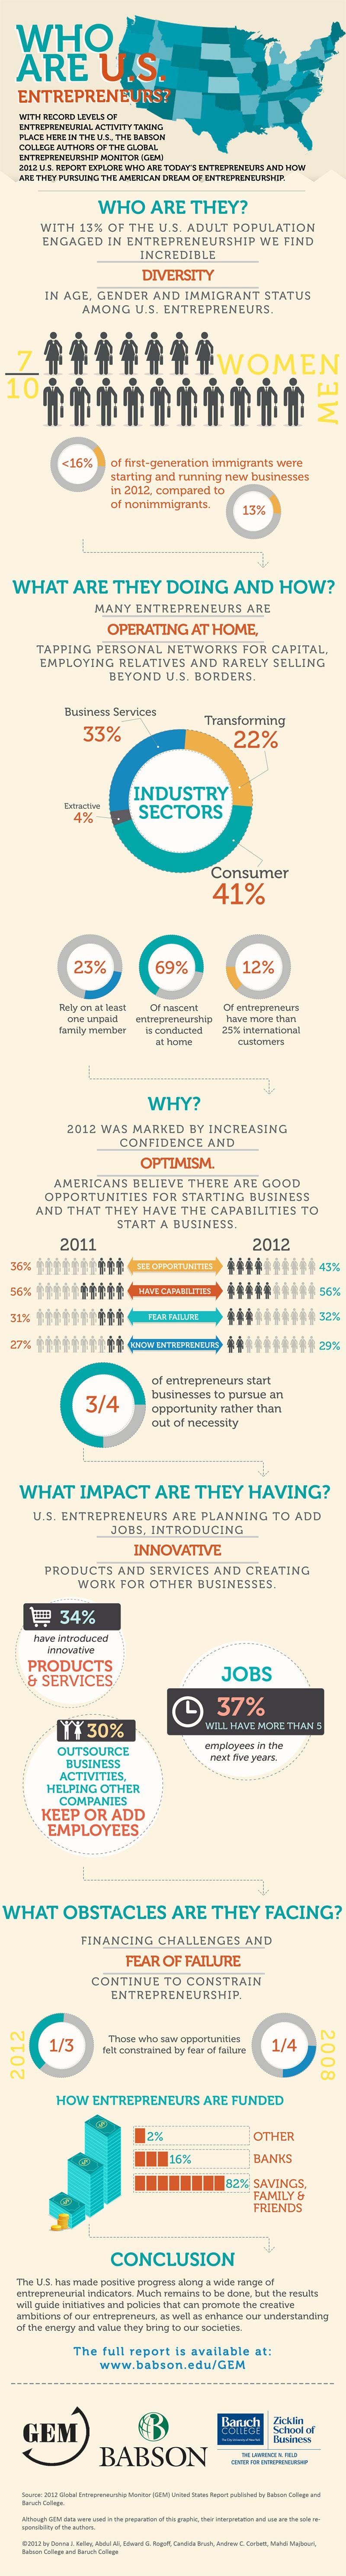 Demographic of Successful Entrepreneurs